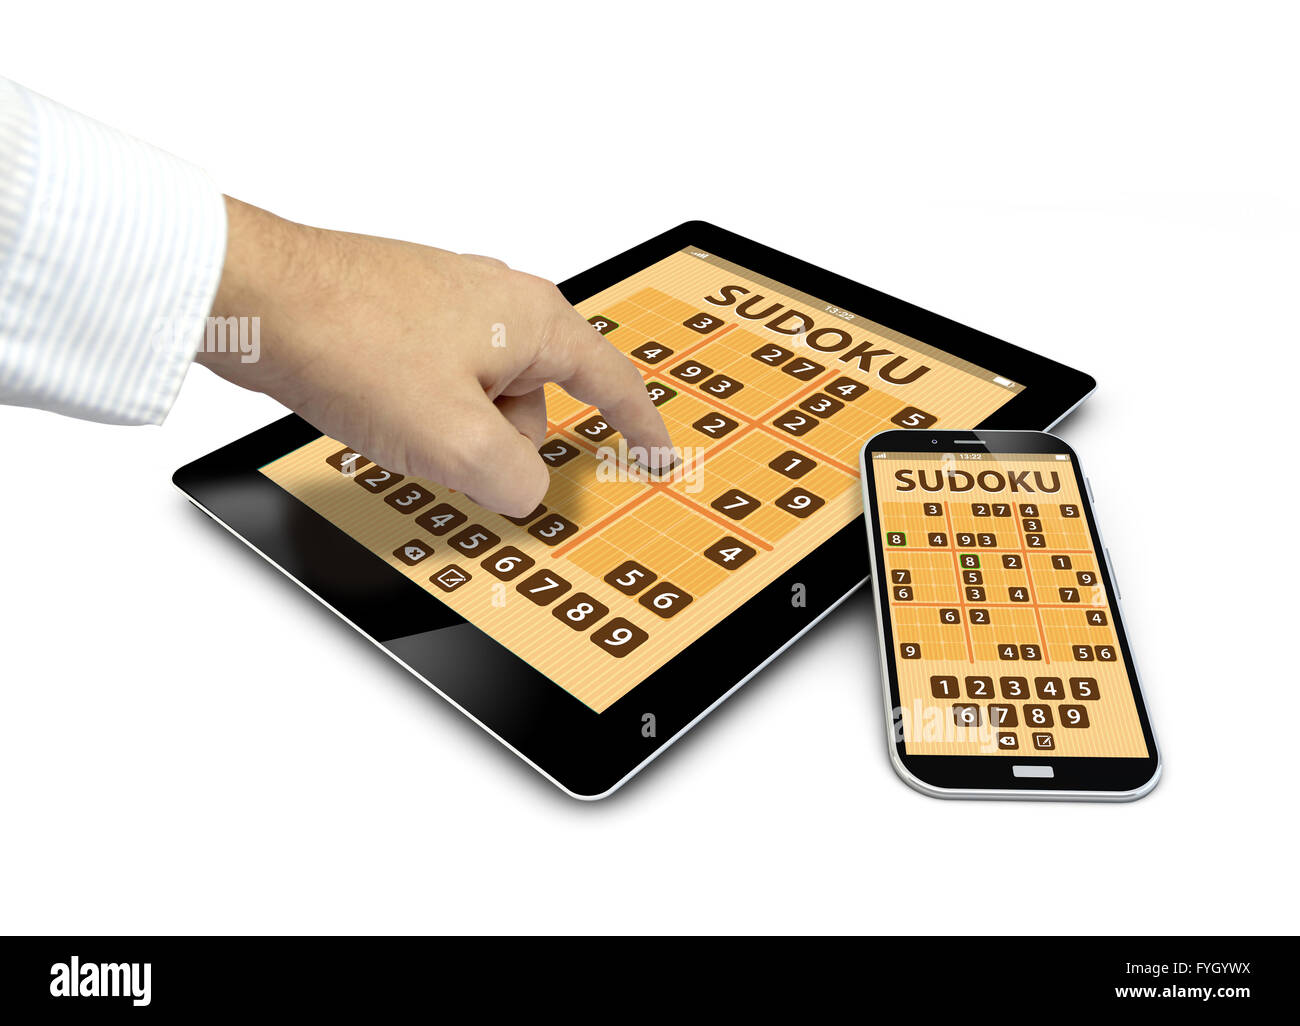 Gruppe von Touchscreen-Geräten mit Sudoku-Spiel und einer Hand berühren des Bildschirms isoliert auf weißem Hintergrund Stockfoto